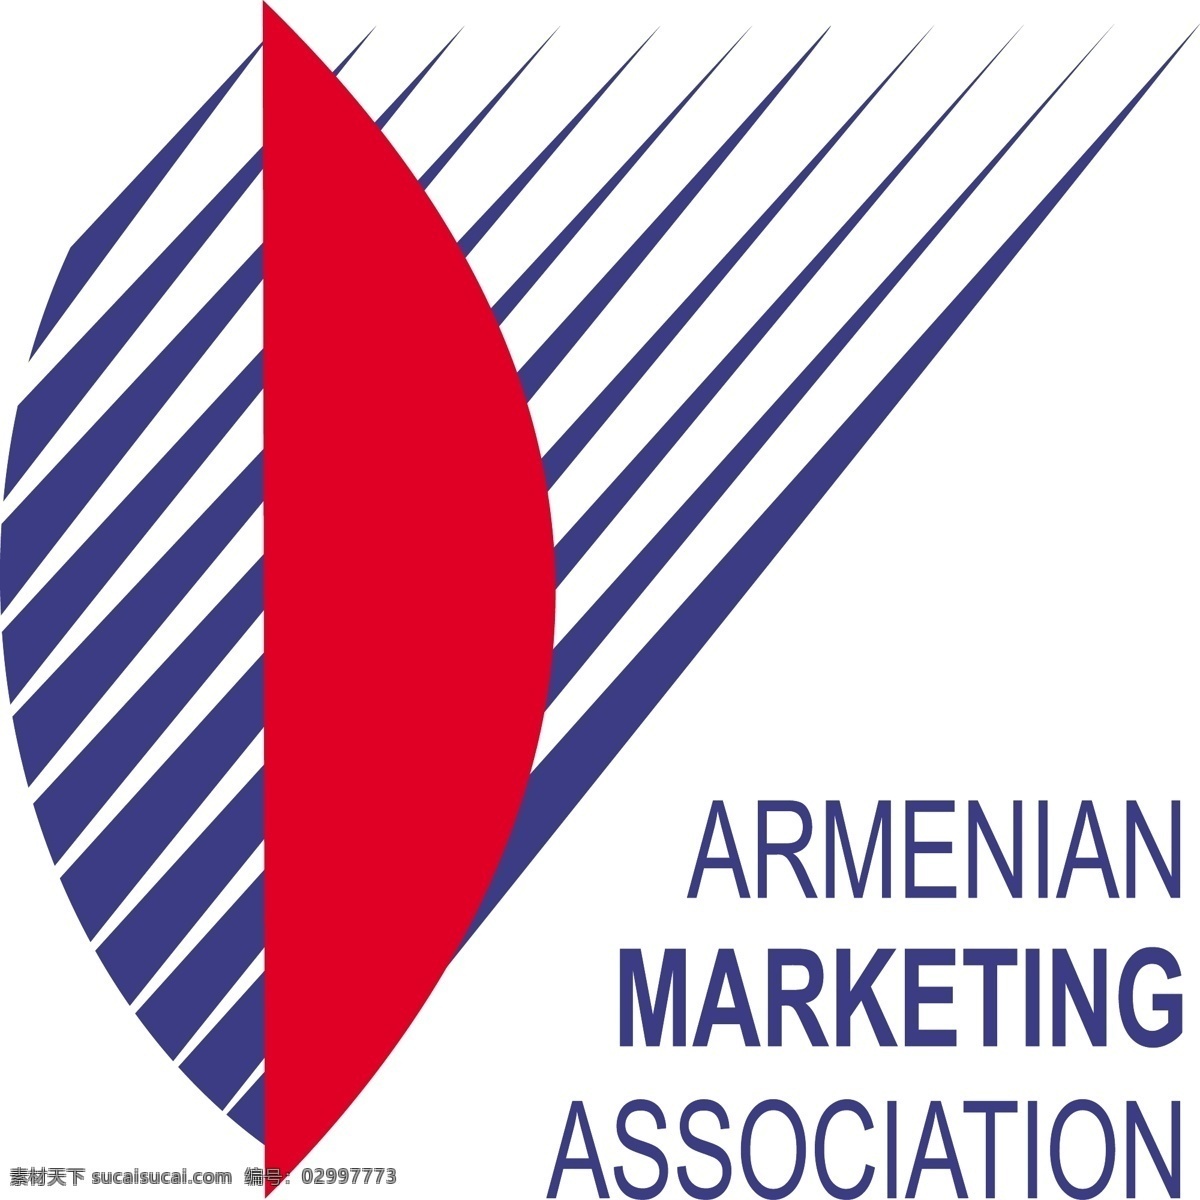 ama 美国 市场营销 协会 免费的ama 亚美尼亚 营销 标志 下载ama 自由 psd源文件 logo设计